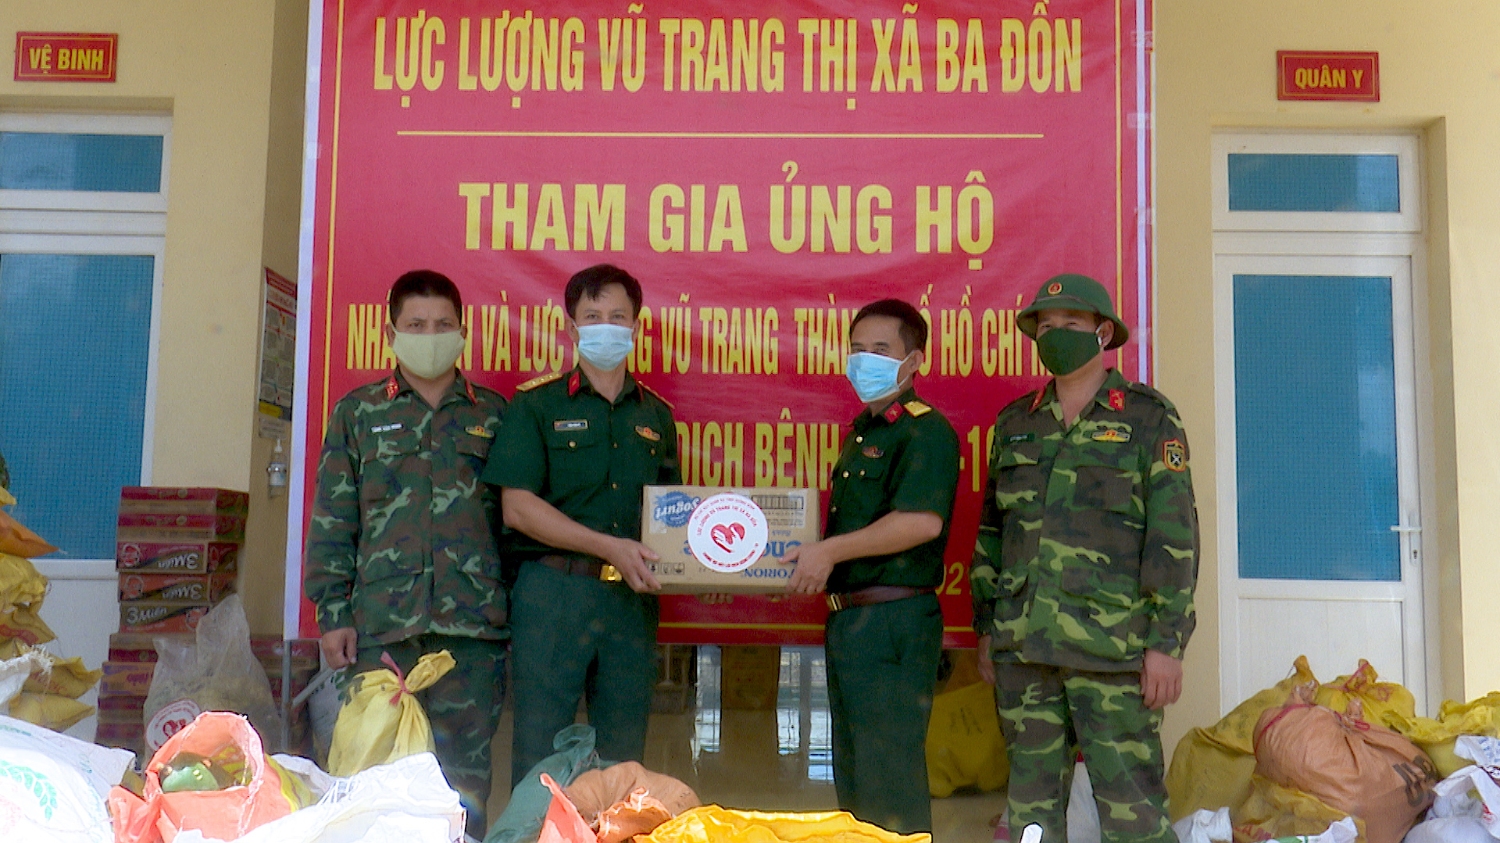 Lực lượng Vũ trang thị xã Ba Đồn chung tay hỗ trợ người dân vùng dịch ở Thành phố Hồ Chí Minh.